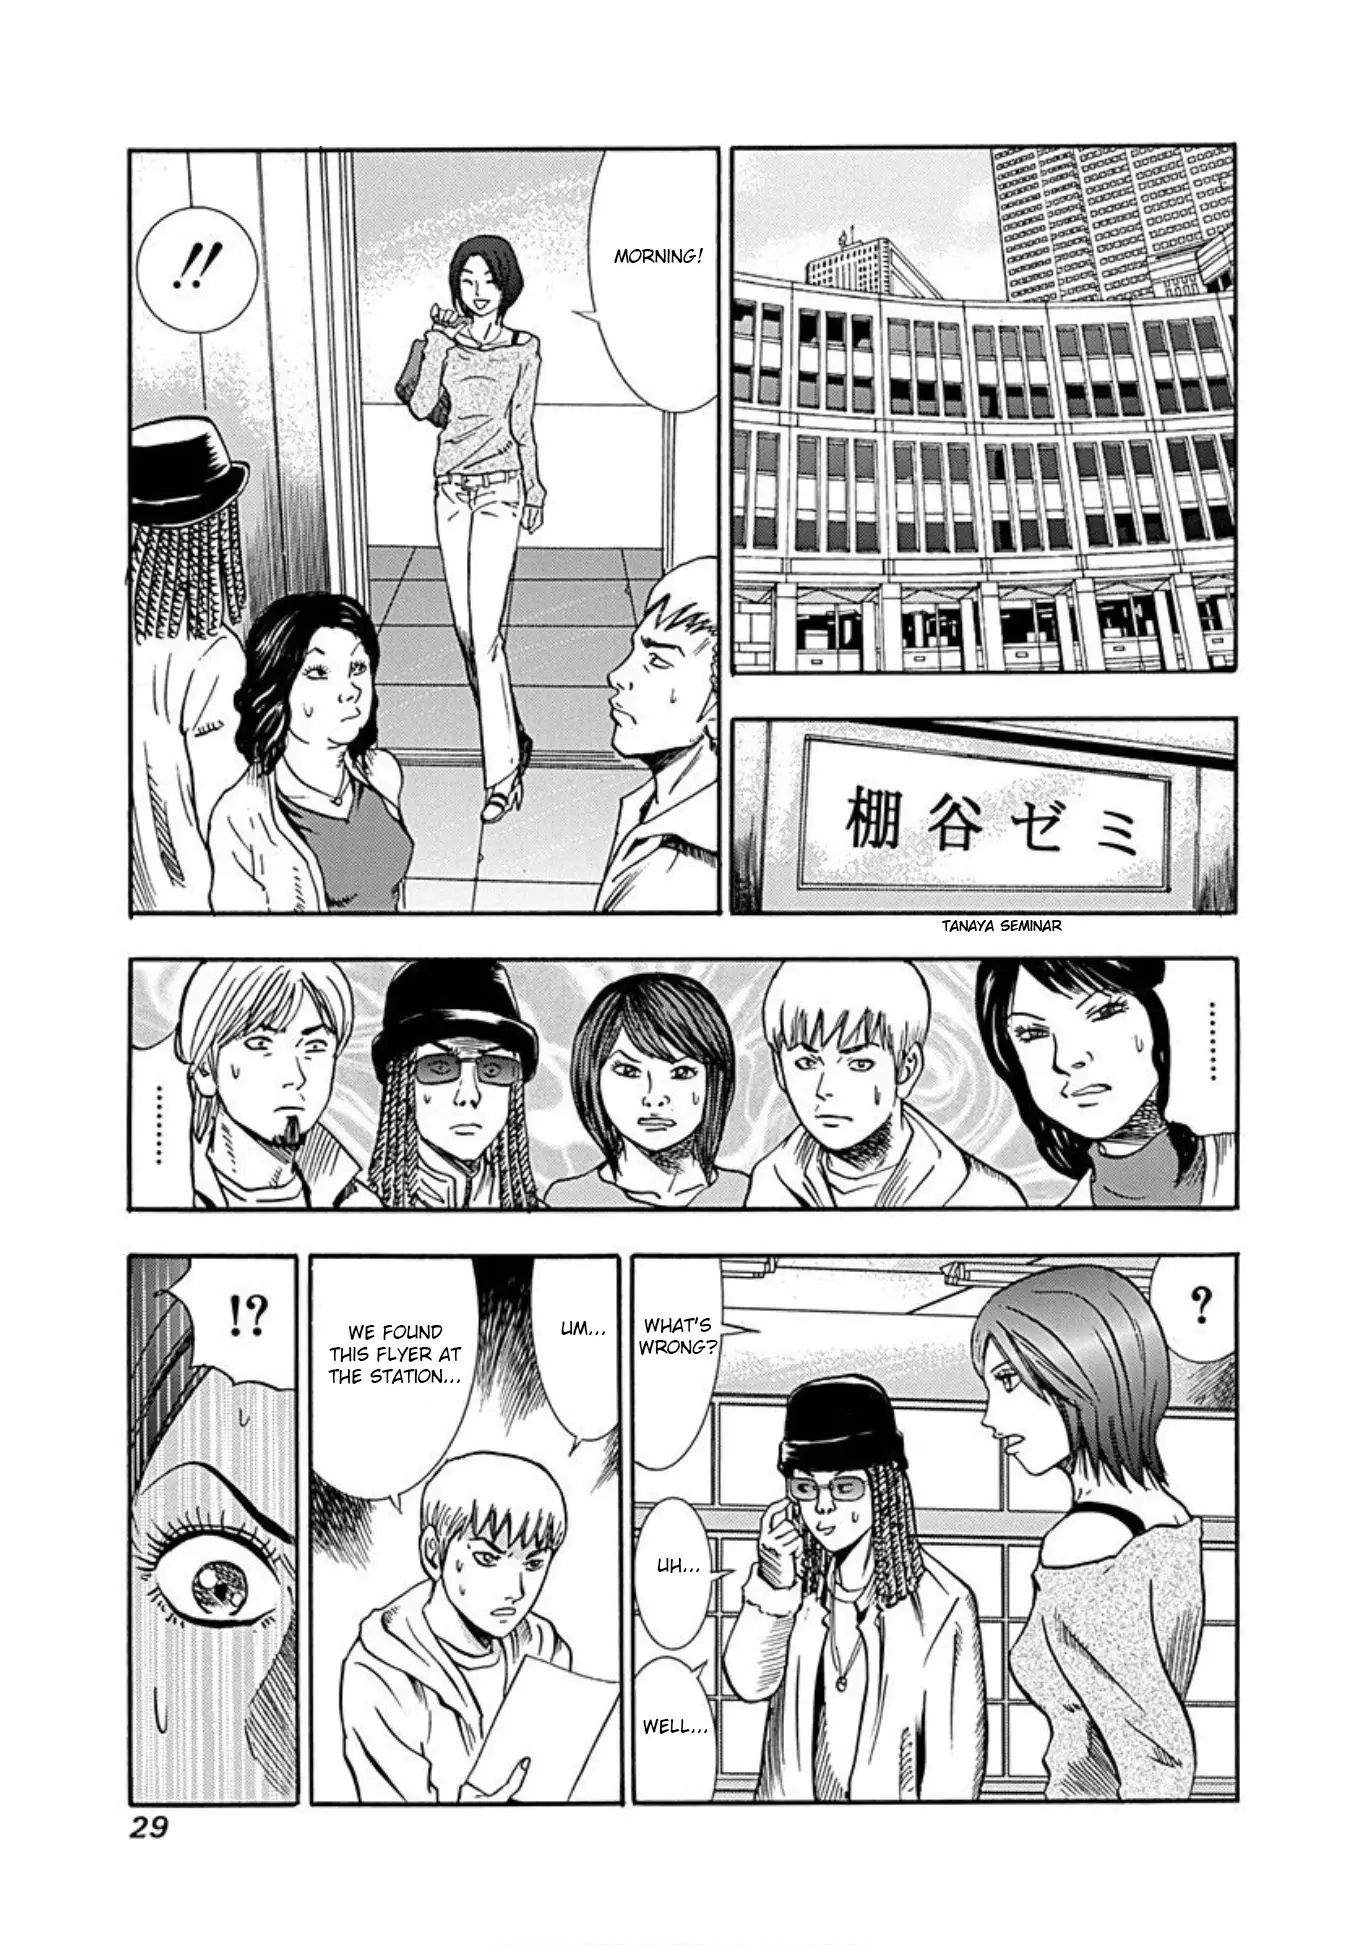 Uramiya Honpo - 32 page 26-0532af10